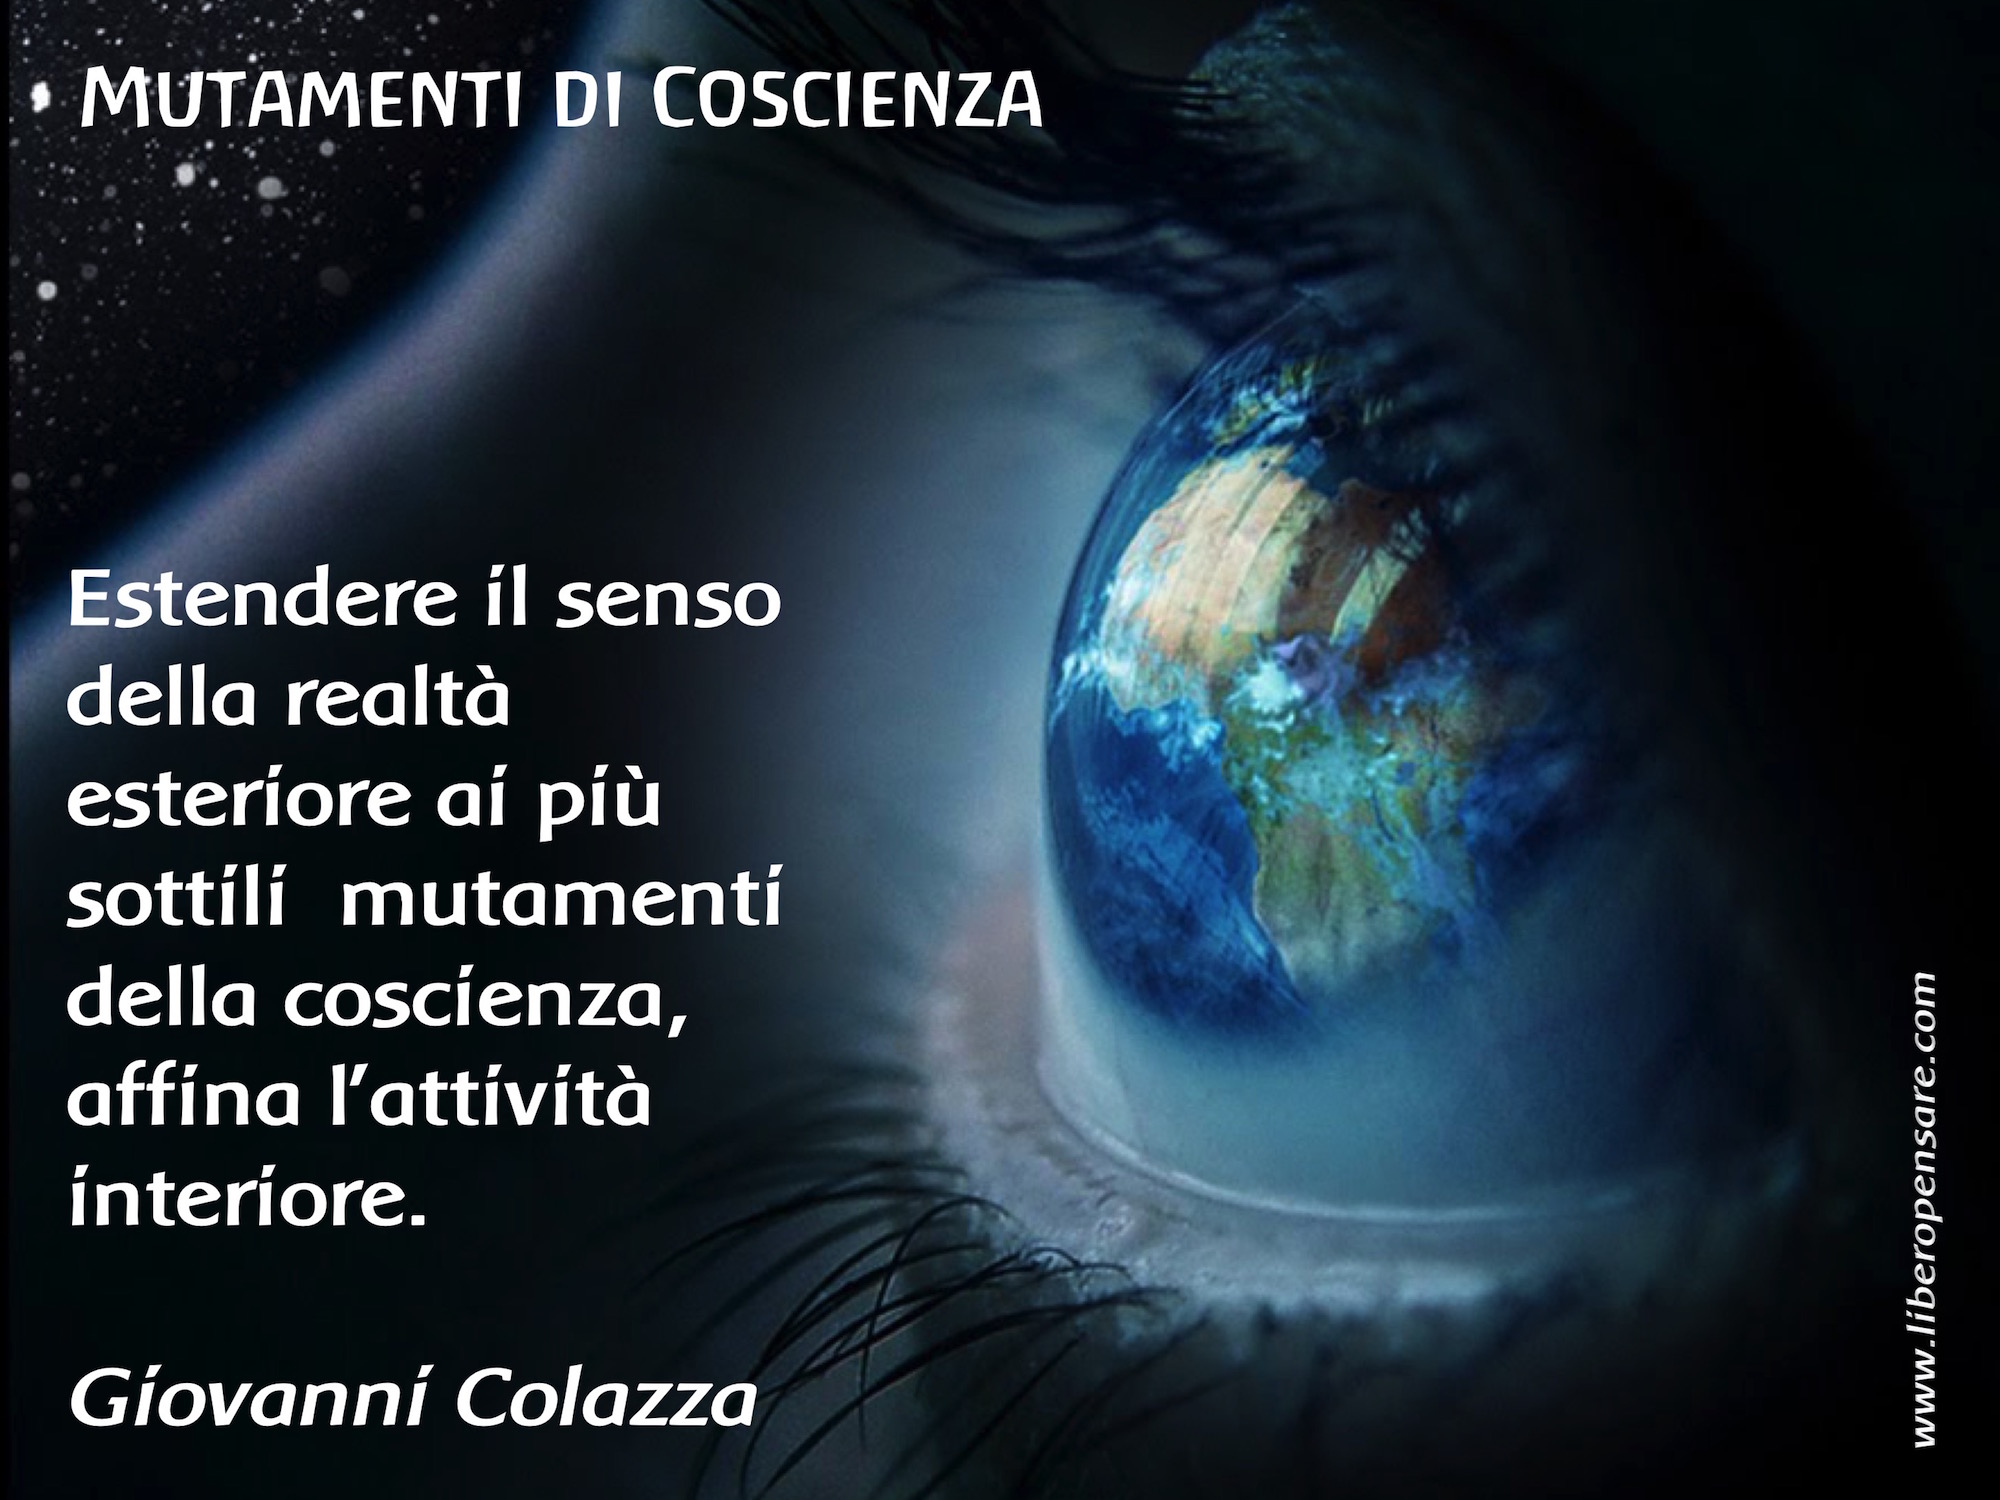 Mutamenti_di_Coscienza_Giovanni_Colazza.jpg